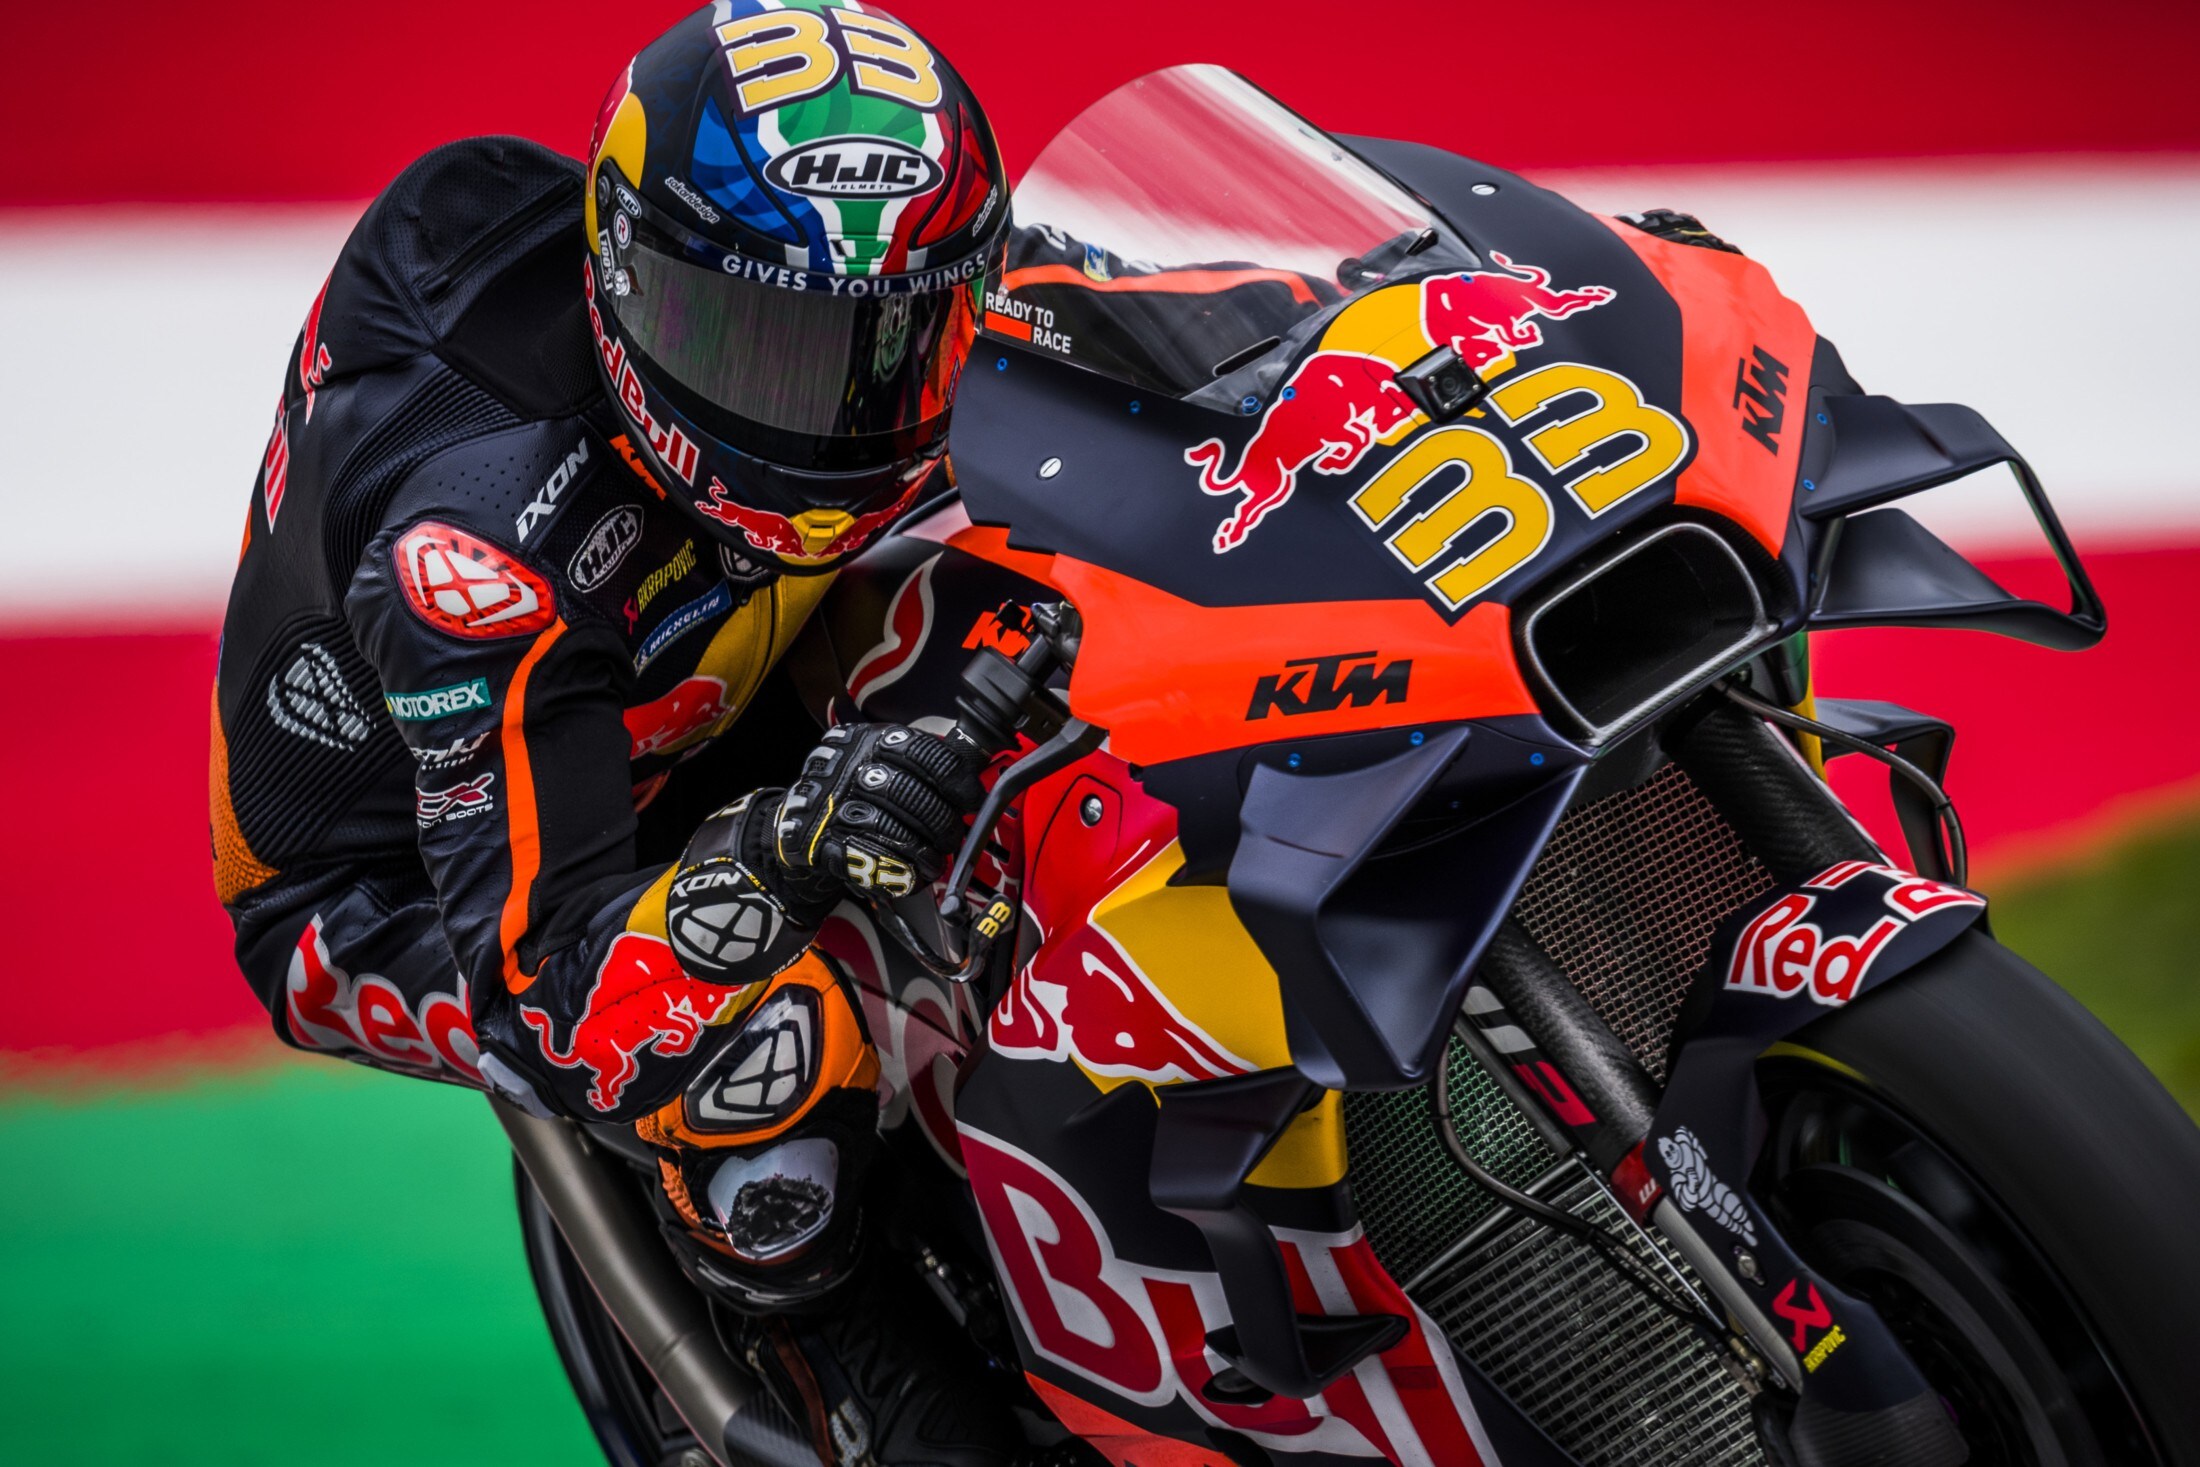 Sorte salvou MotoGP em domingo de 'Premonição'. Mas Red Bull Ring